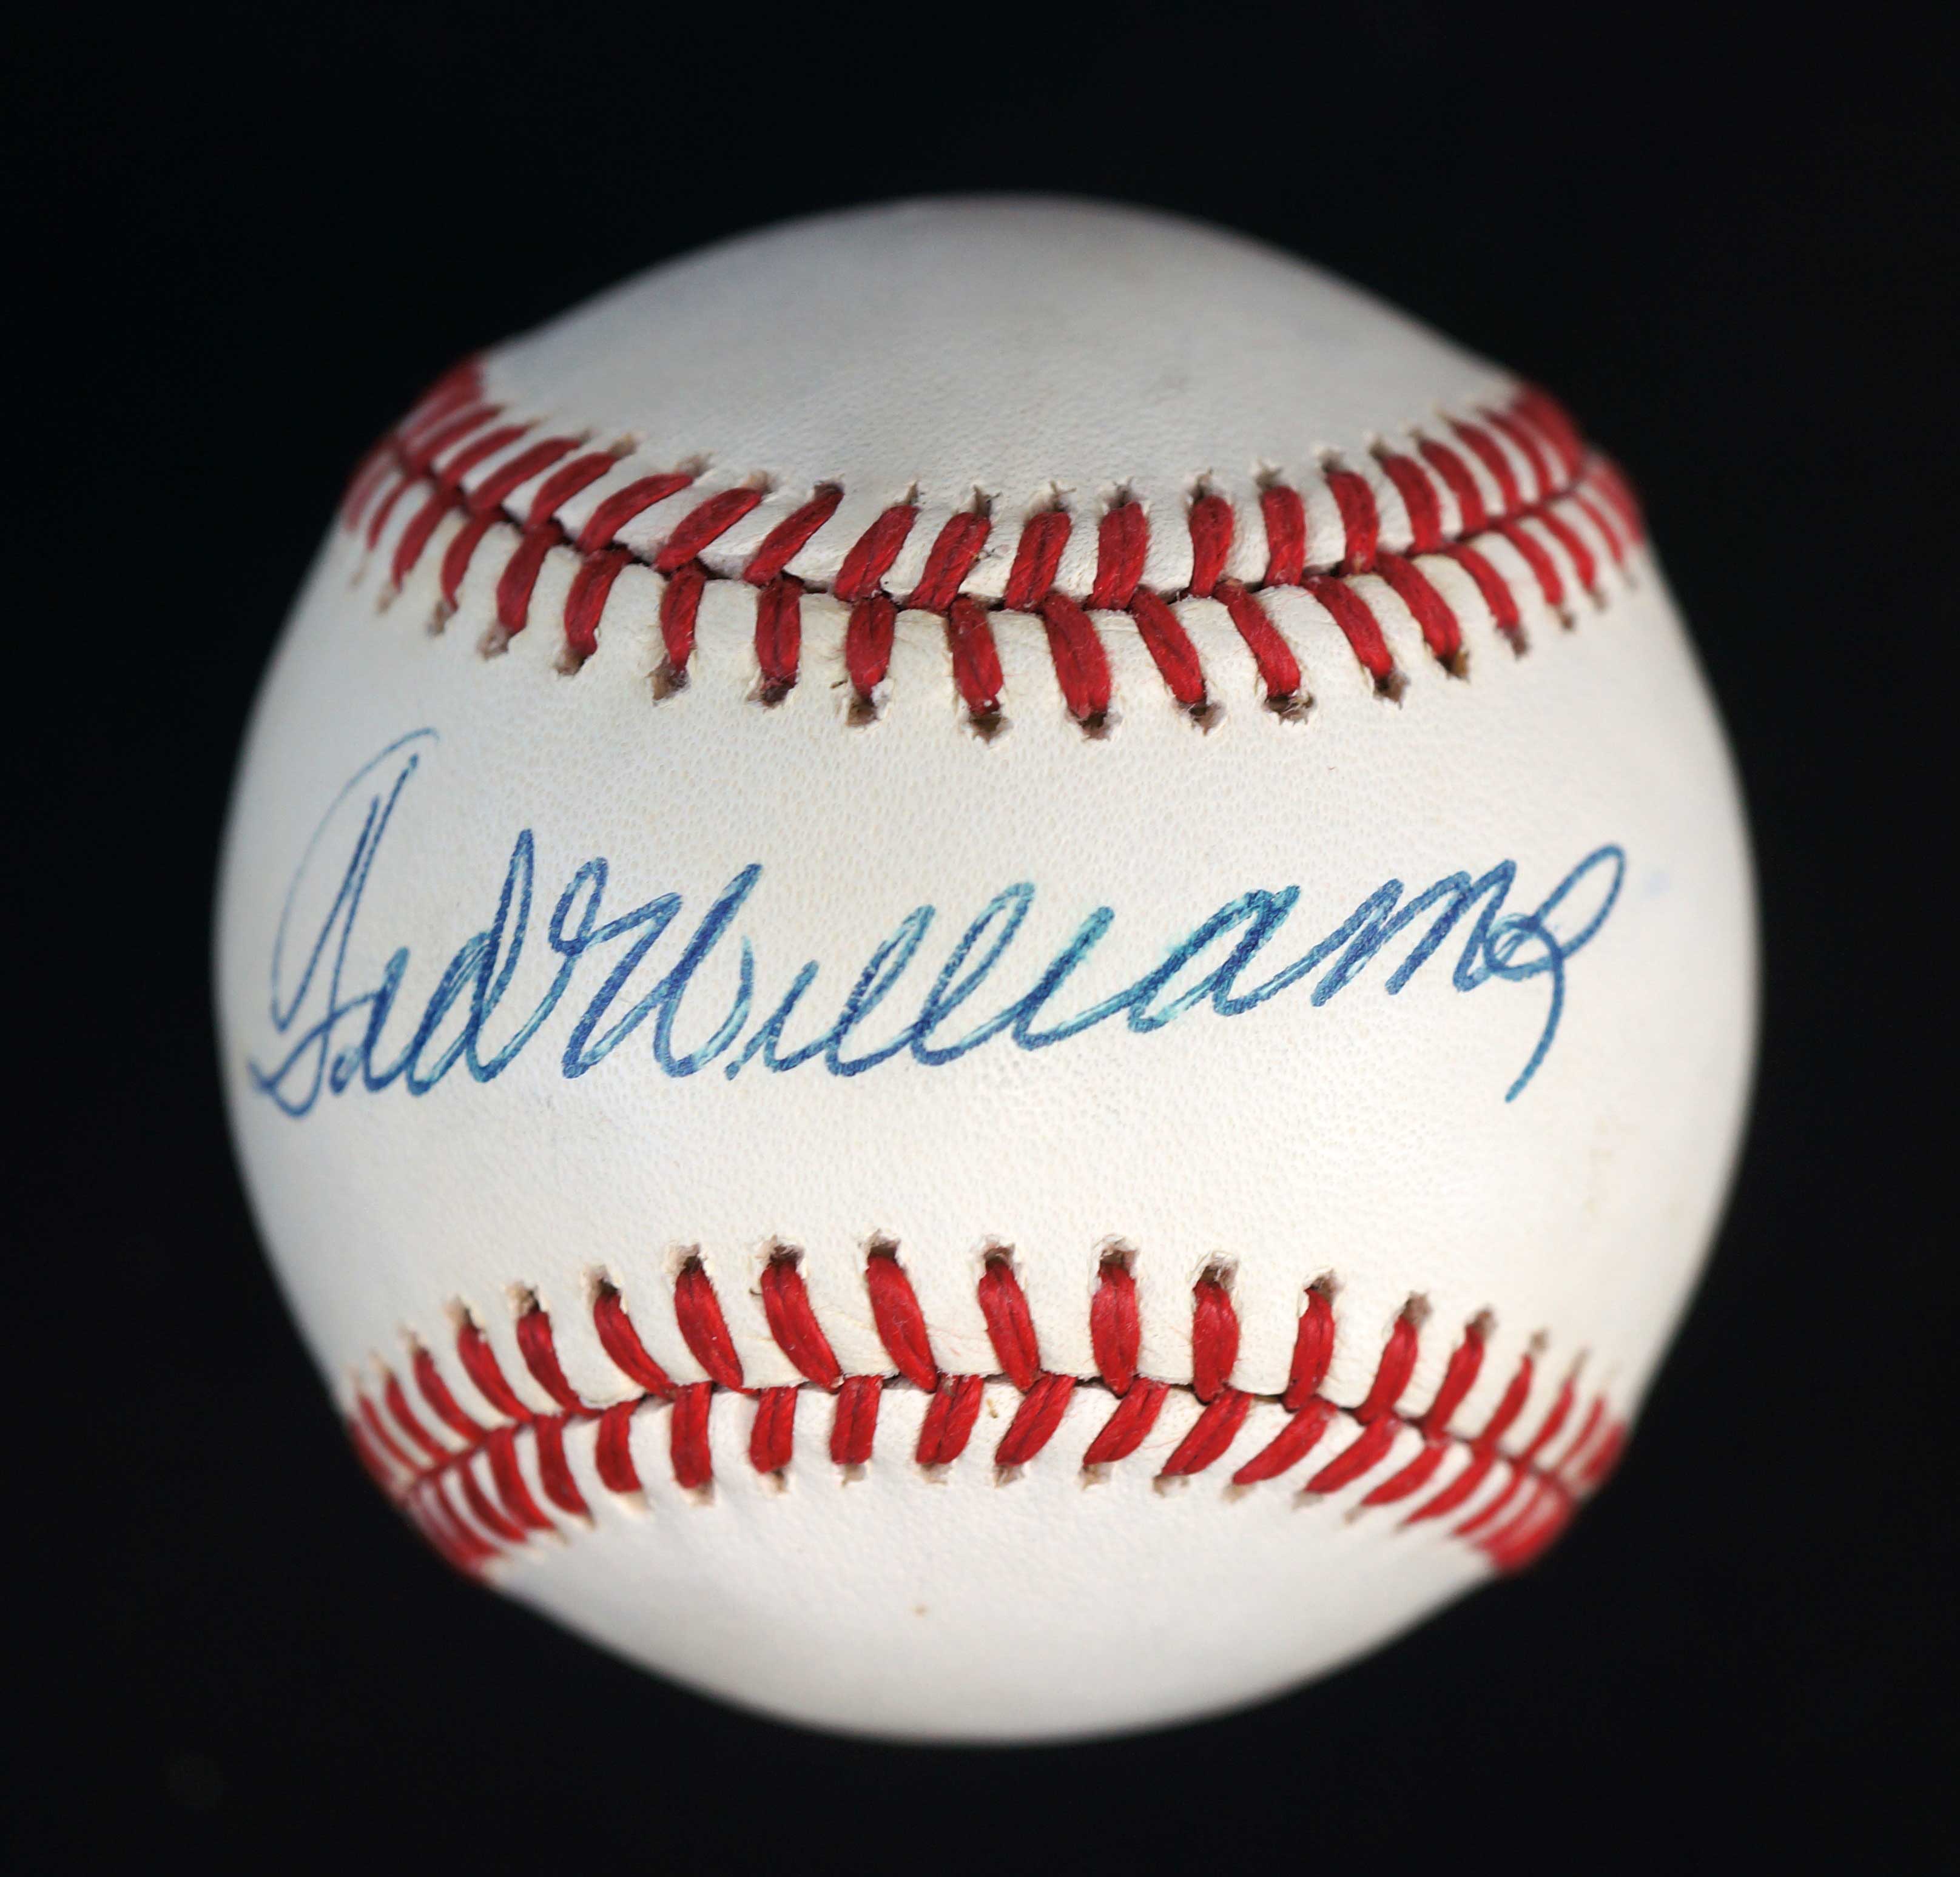 Lot 302 Ted Williams Single Signed Baseball with COA